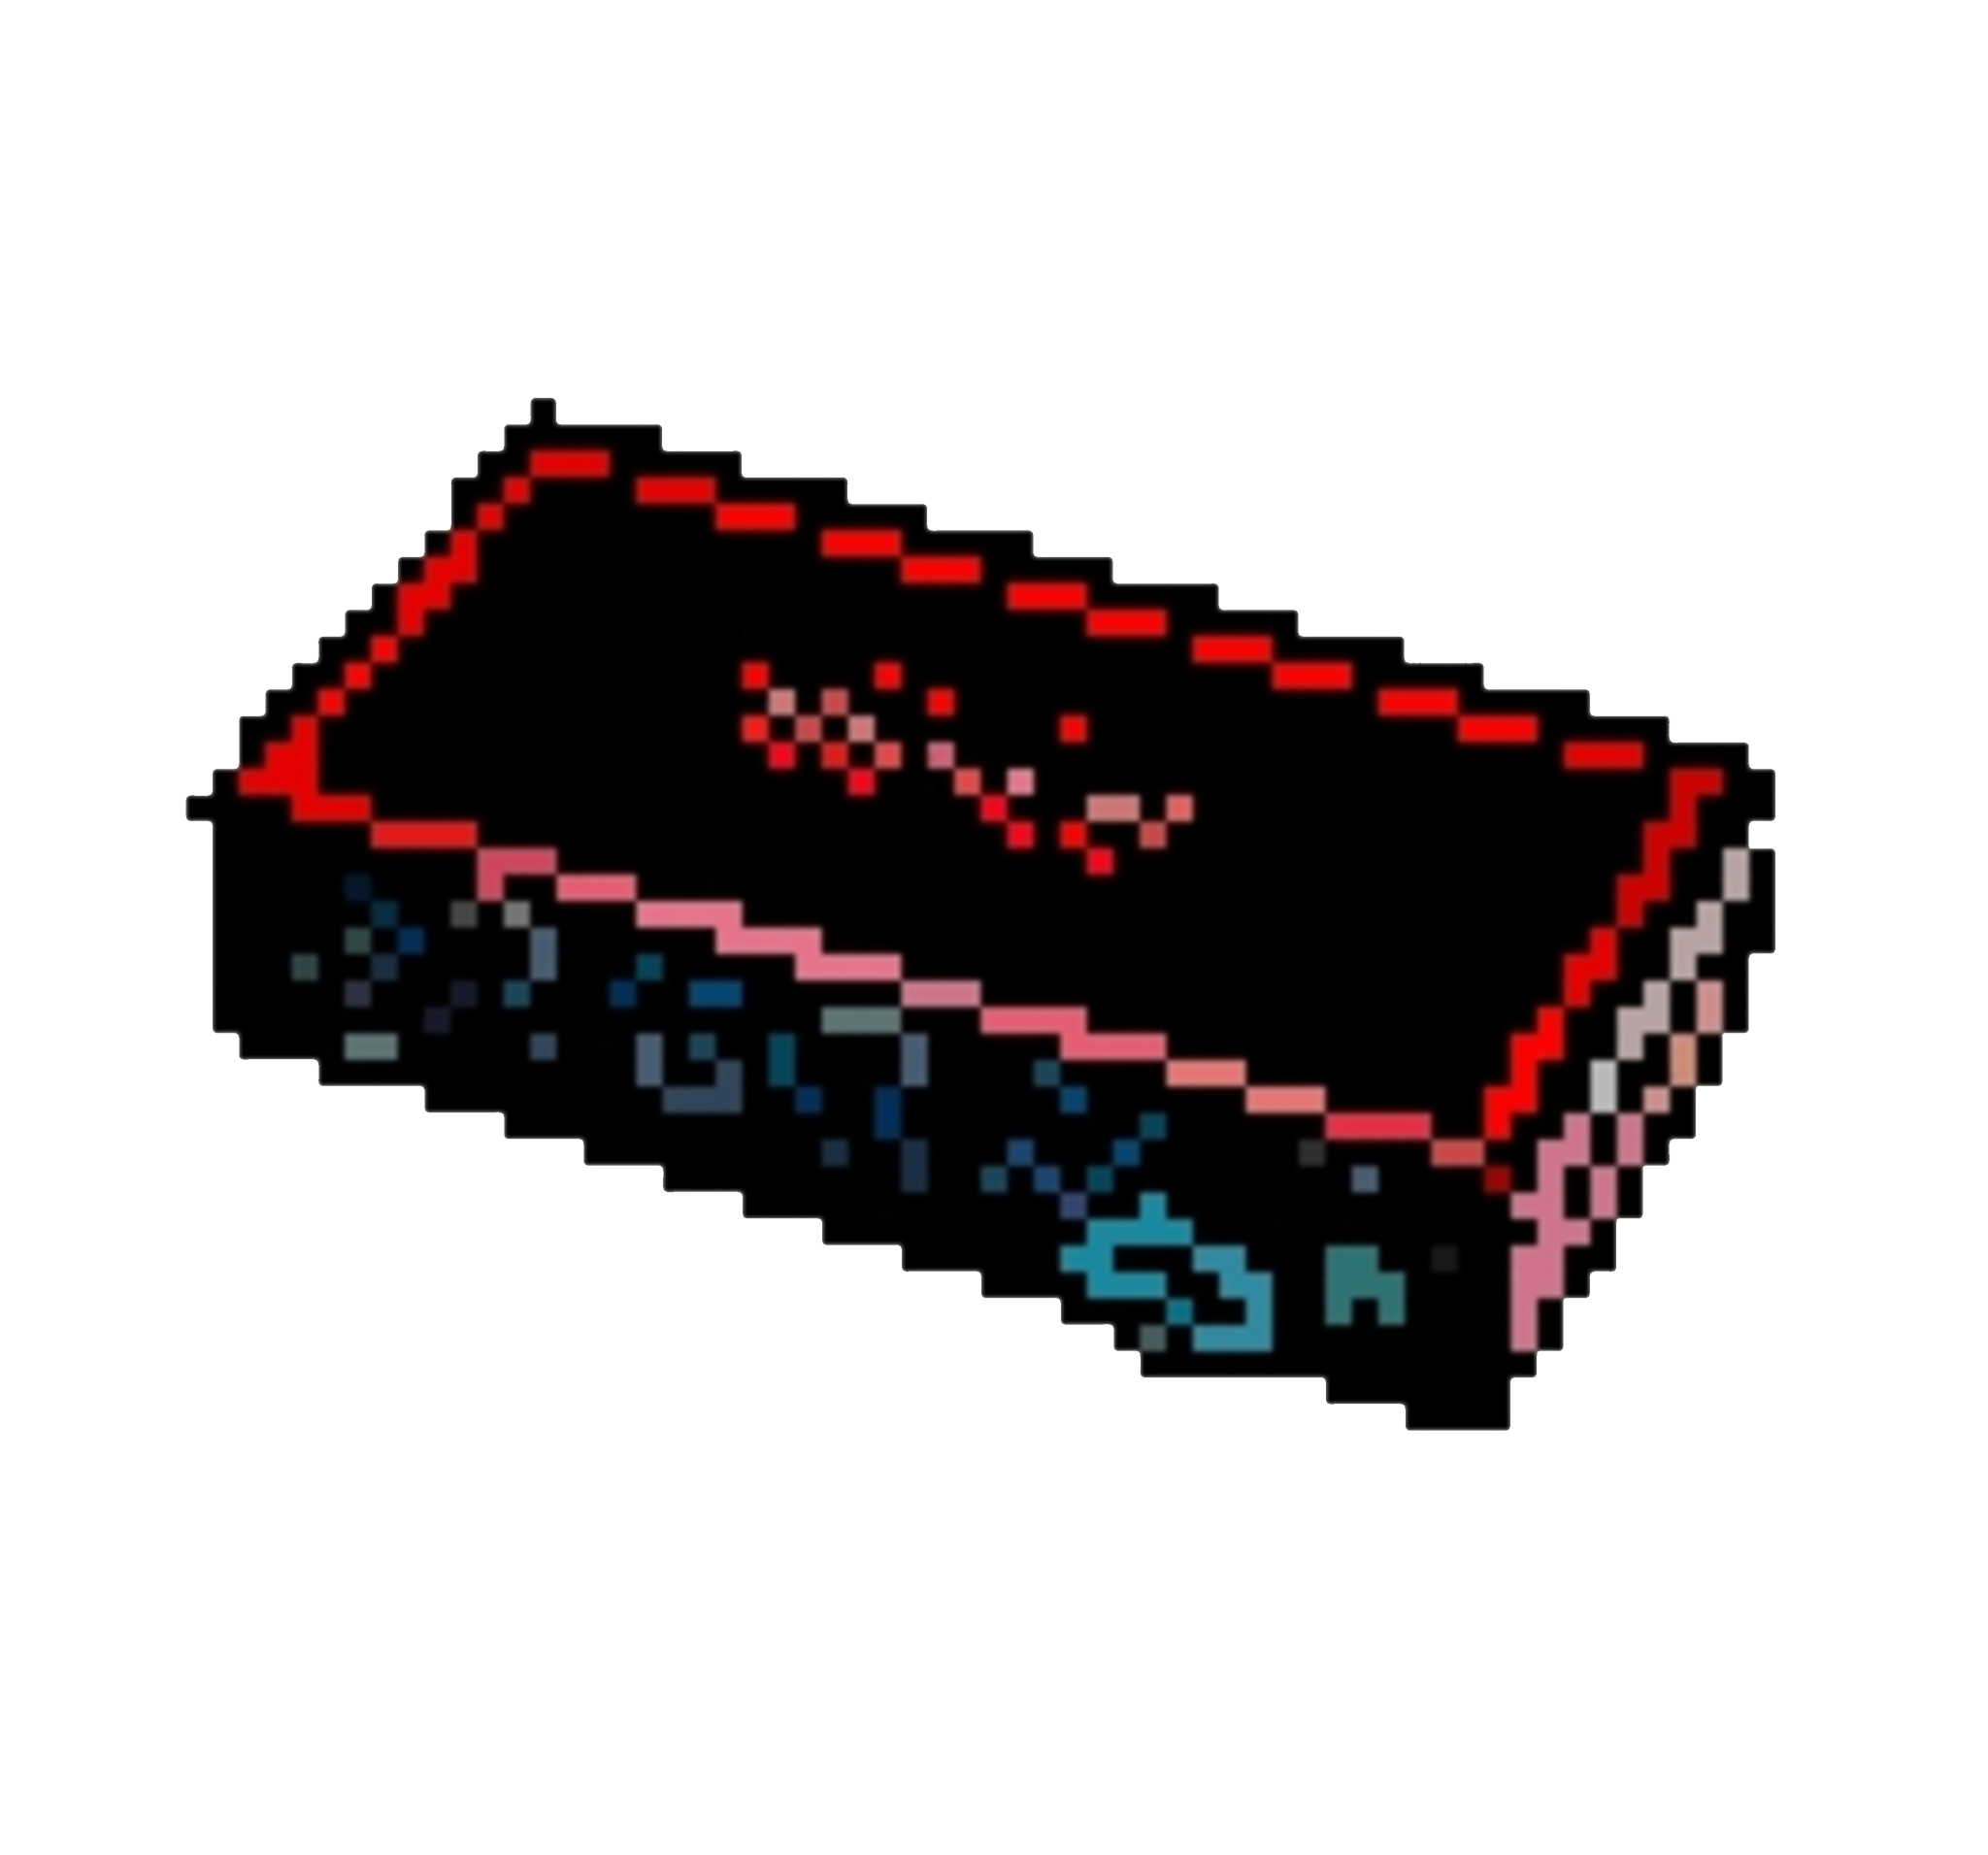 Pixel art of a Focusrite interface